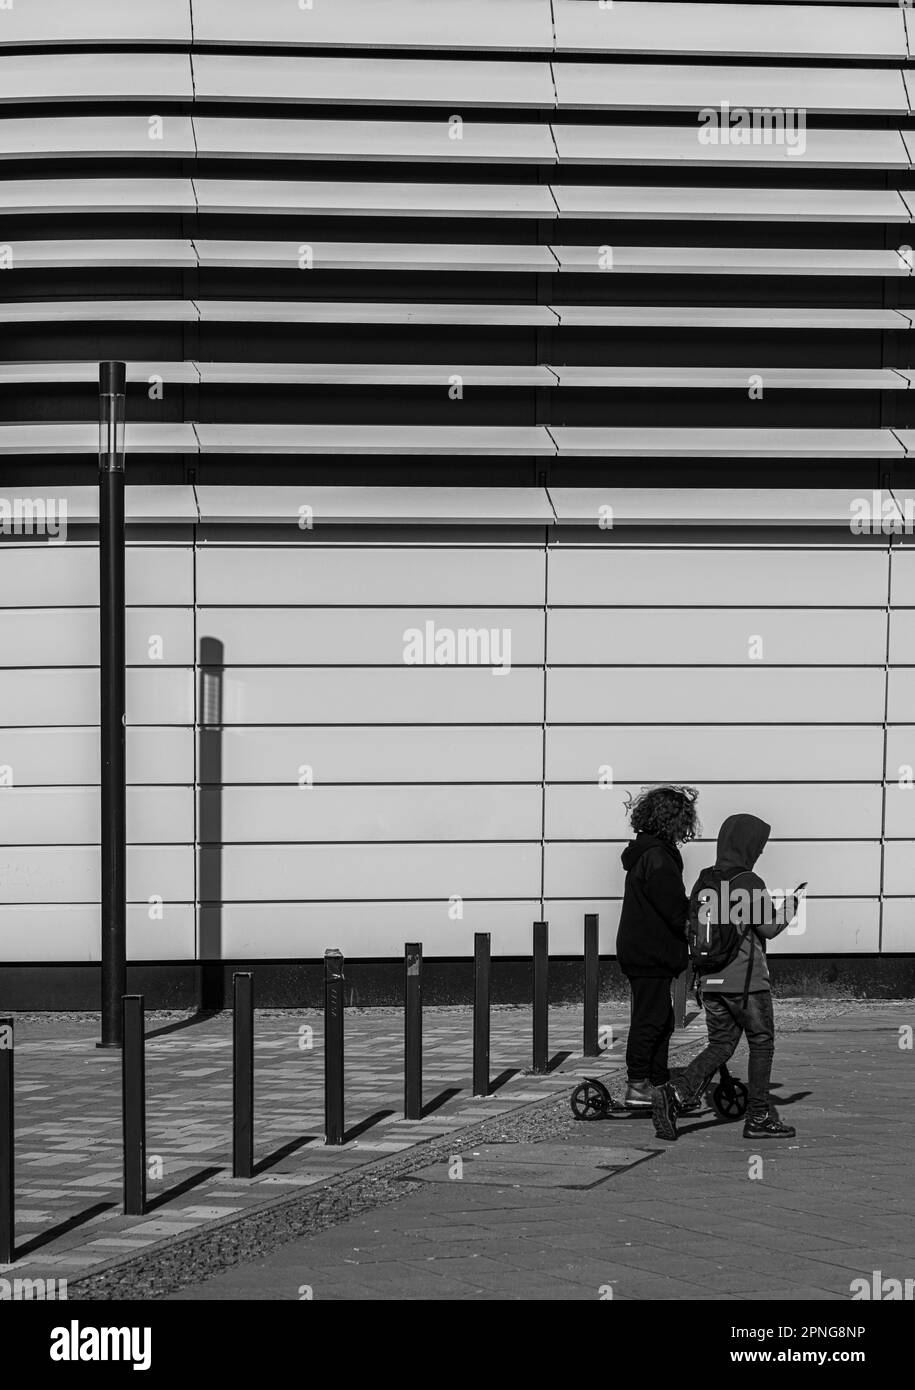 Fotografia in bianco e nero, camminatore di fronte all'architettura moderna, Friedrichshain, Berlino, Germania Foto Stock